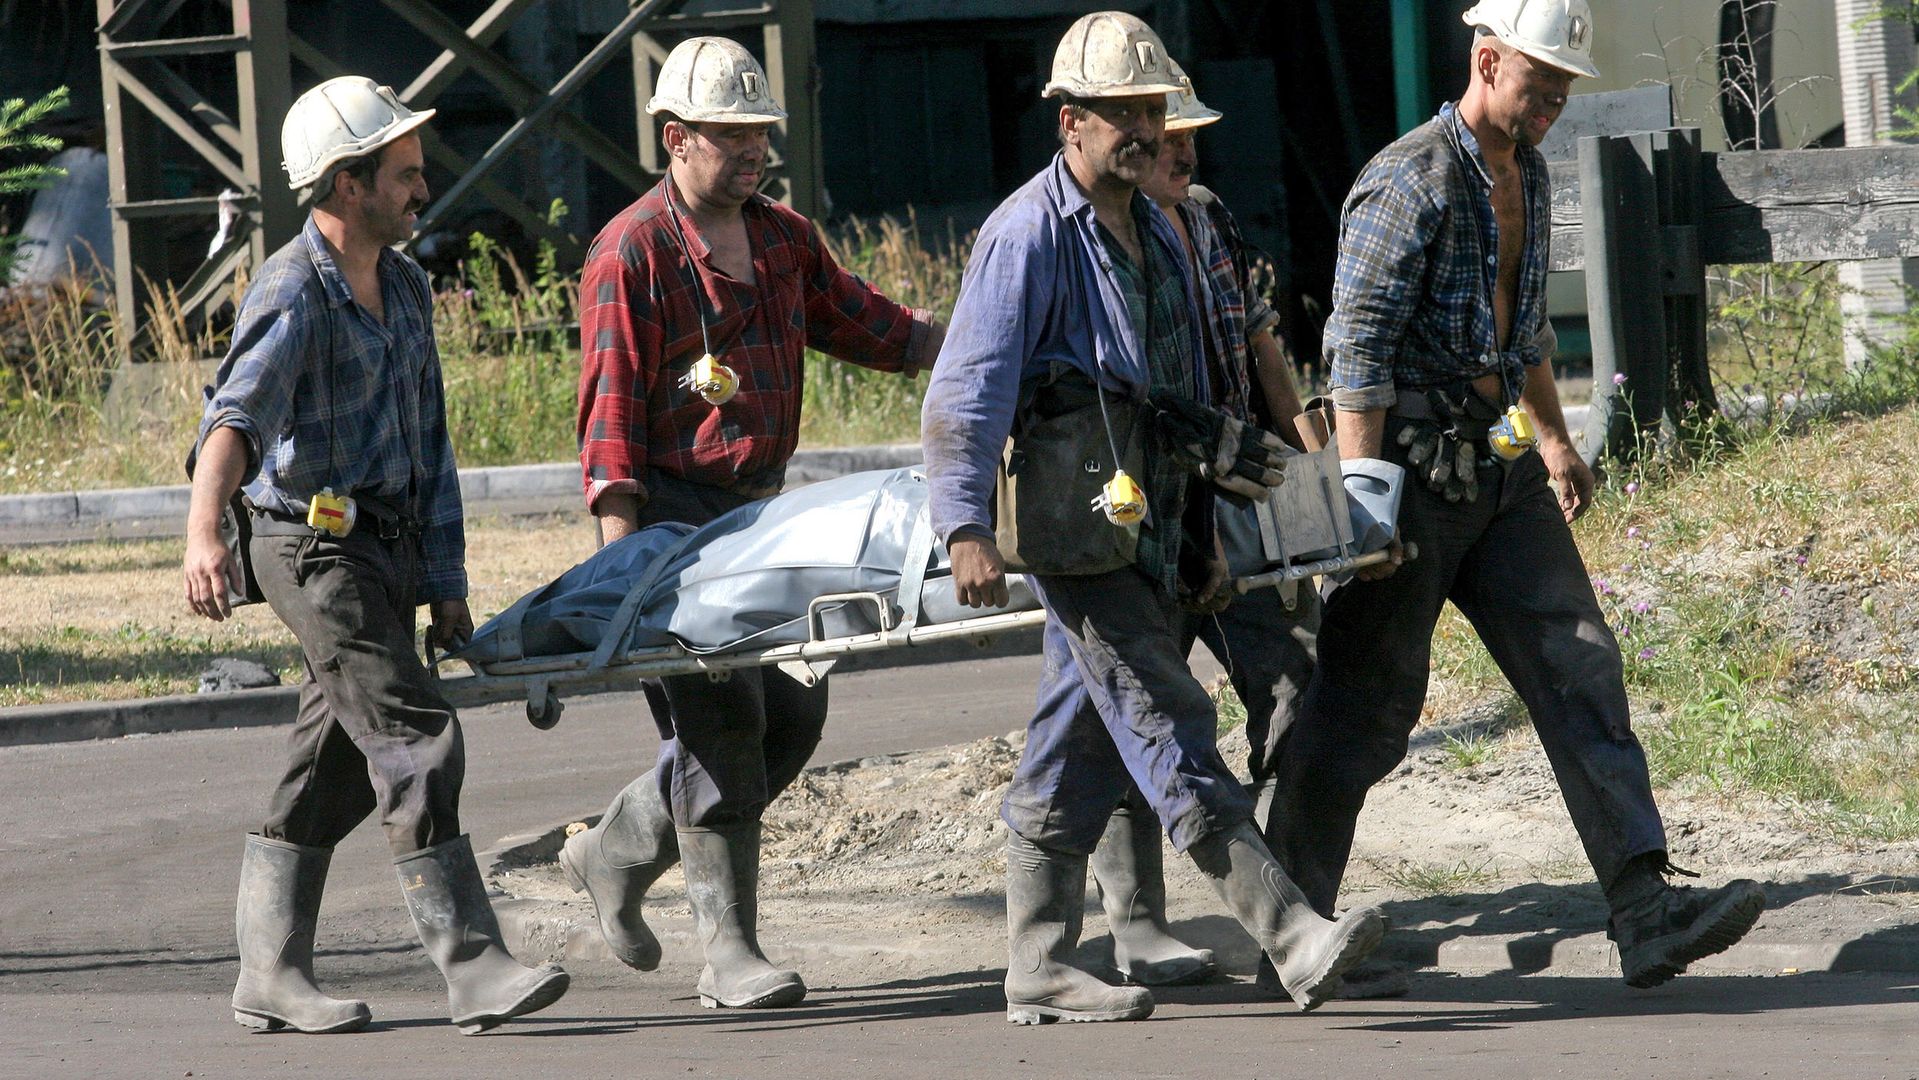 Ratownicy niosą ciało górnika po wypadku w kopalni "Pokój" w Rudzie Śląskiej, 28.07.2006 r.